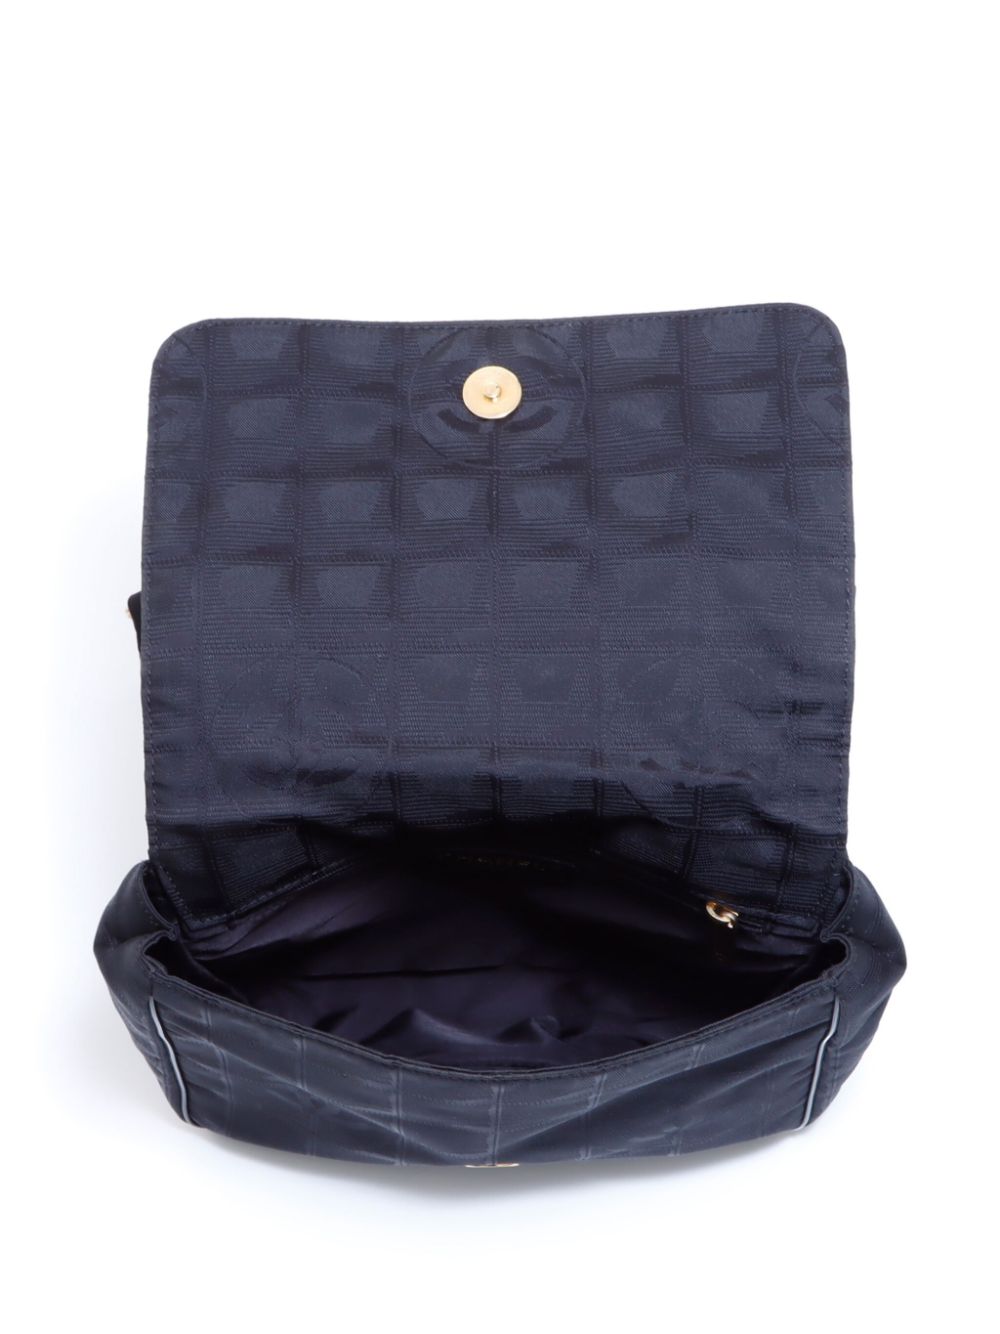 Pre-owned Chanel 2004-2005 Travel Line Belt Bag In Black